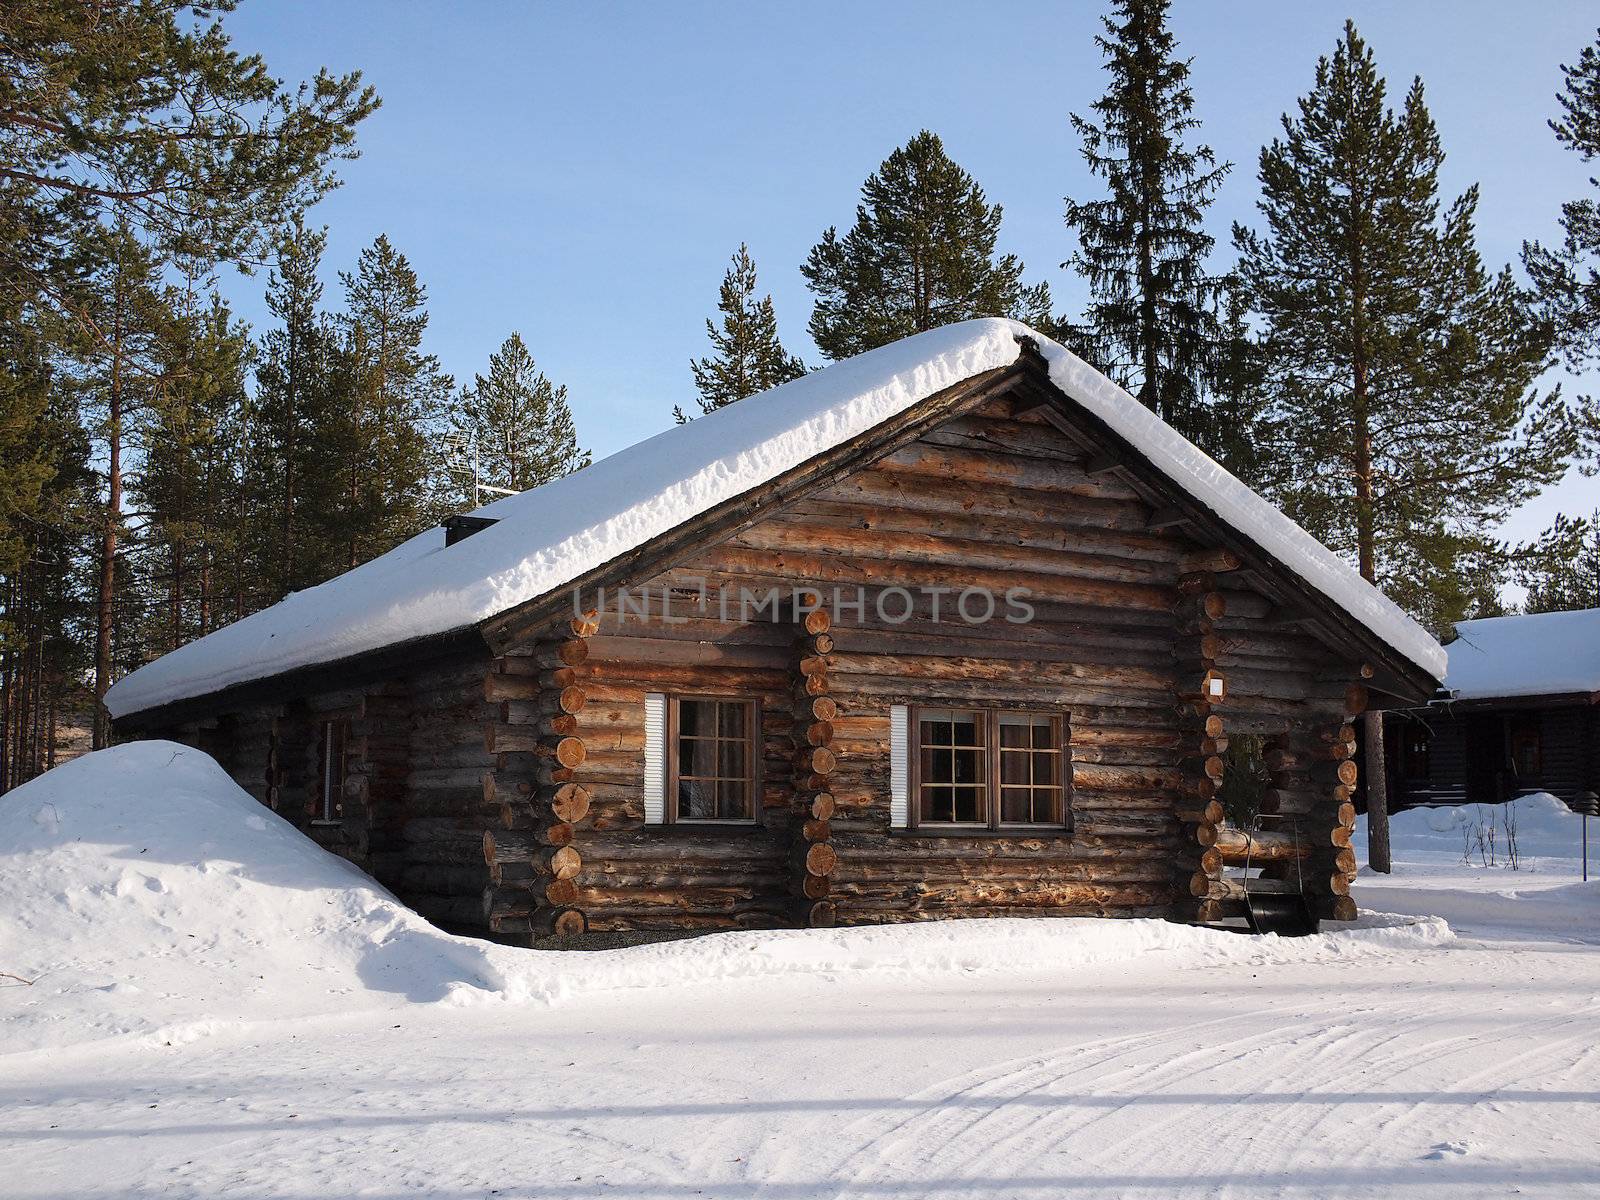 Lapland log cabin by pljvv